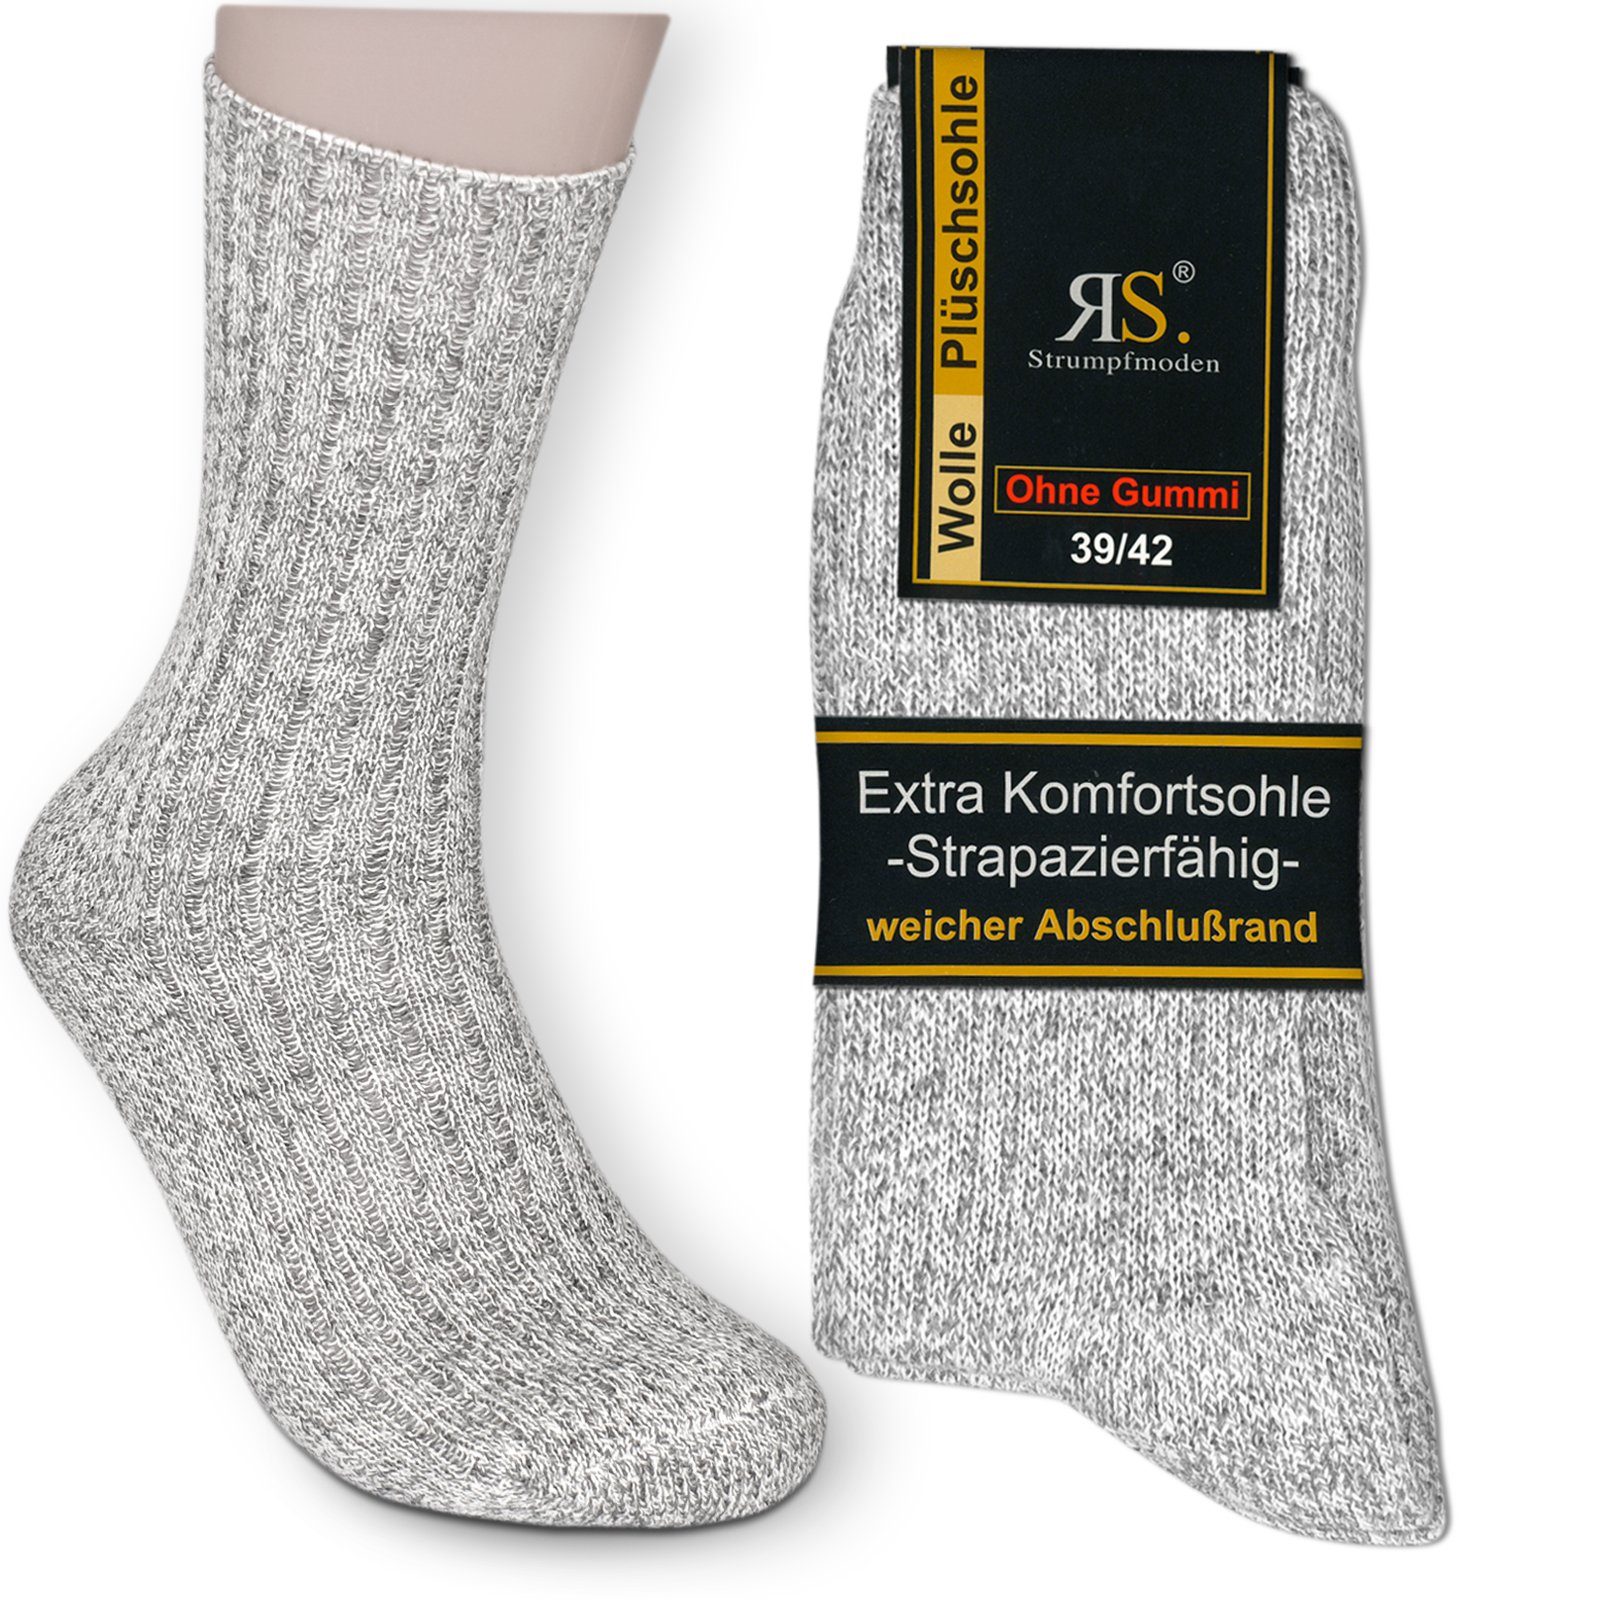 Die Sockenbude Norwegersocken OHNE GUMMI (Bund, 3-Paar, grau) mit Komfort-Polstersohle | Kompressionsstrümpfe